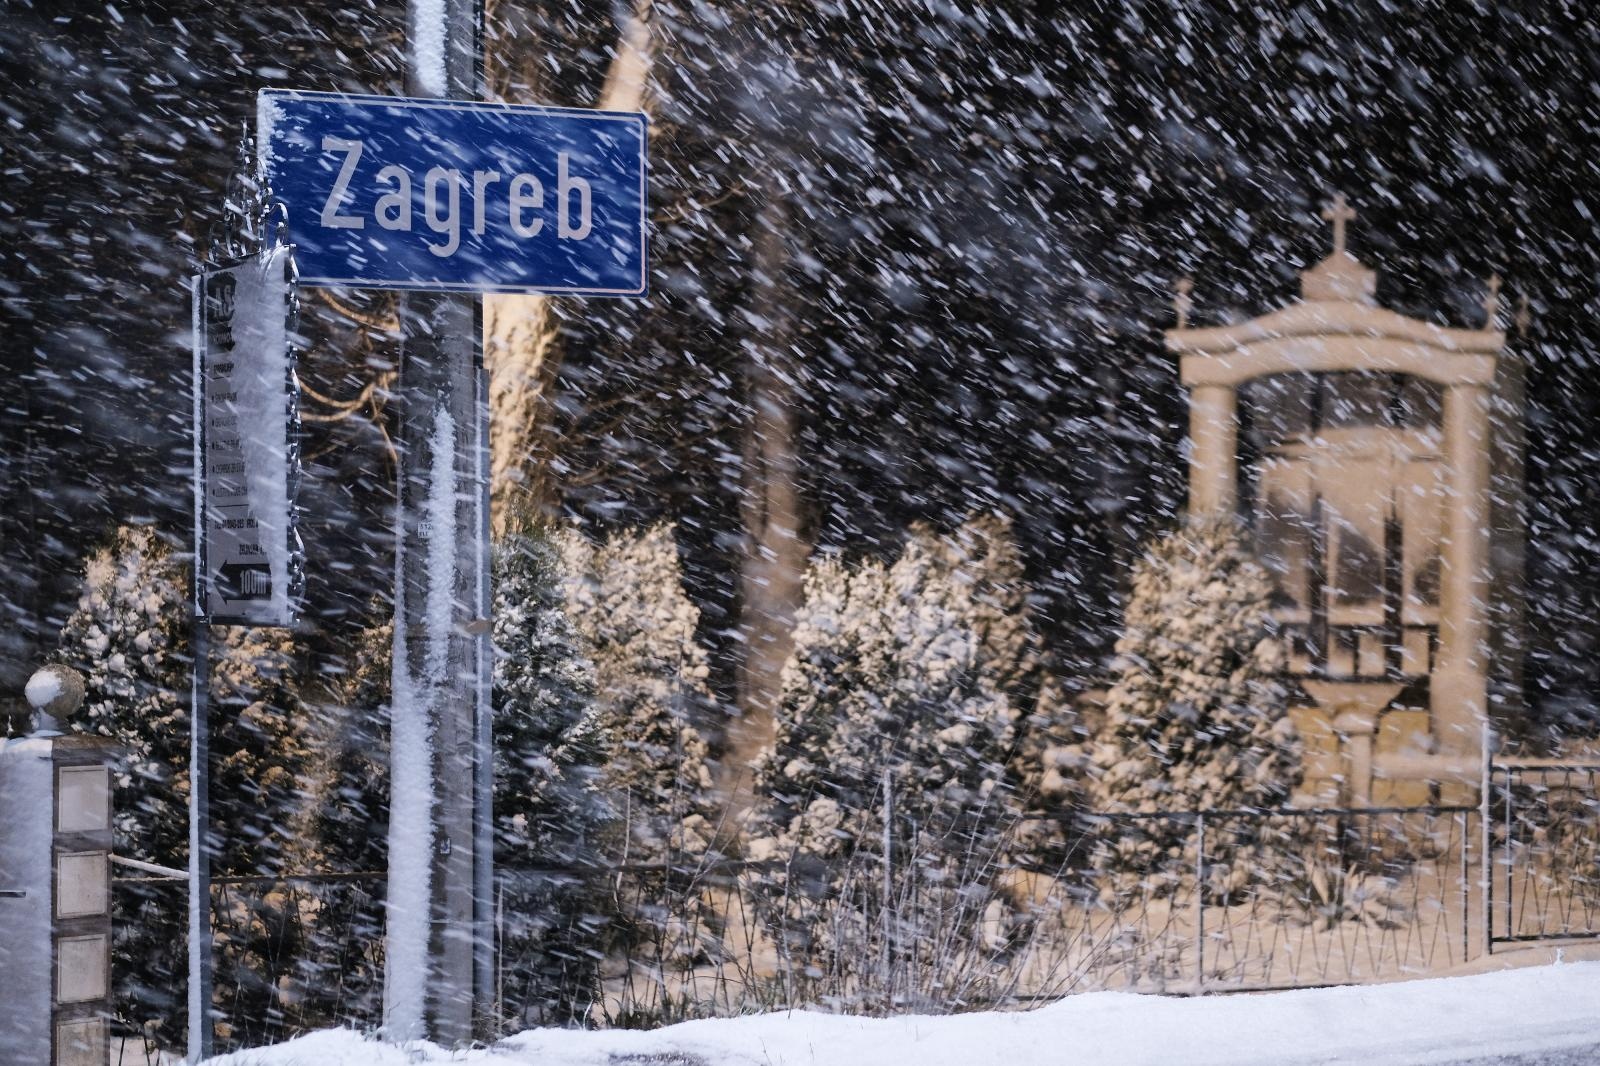 Slika Zagreba od sinoć kad je snijeg počeo padati.